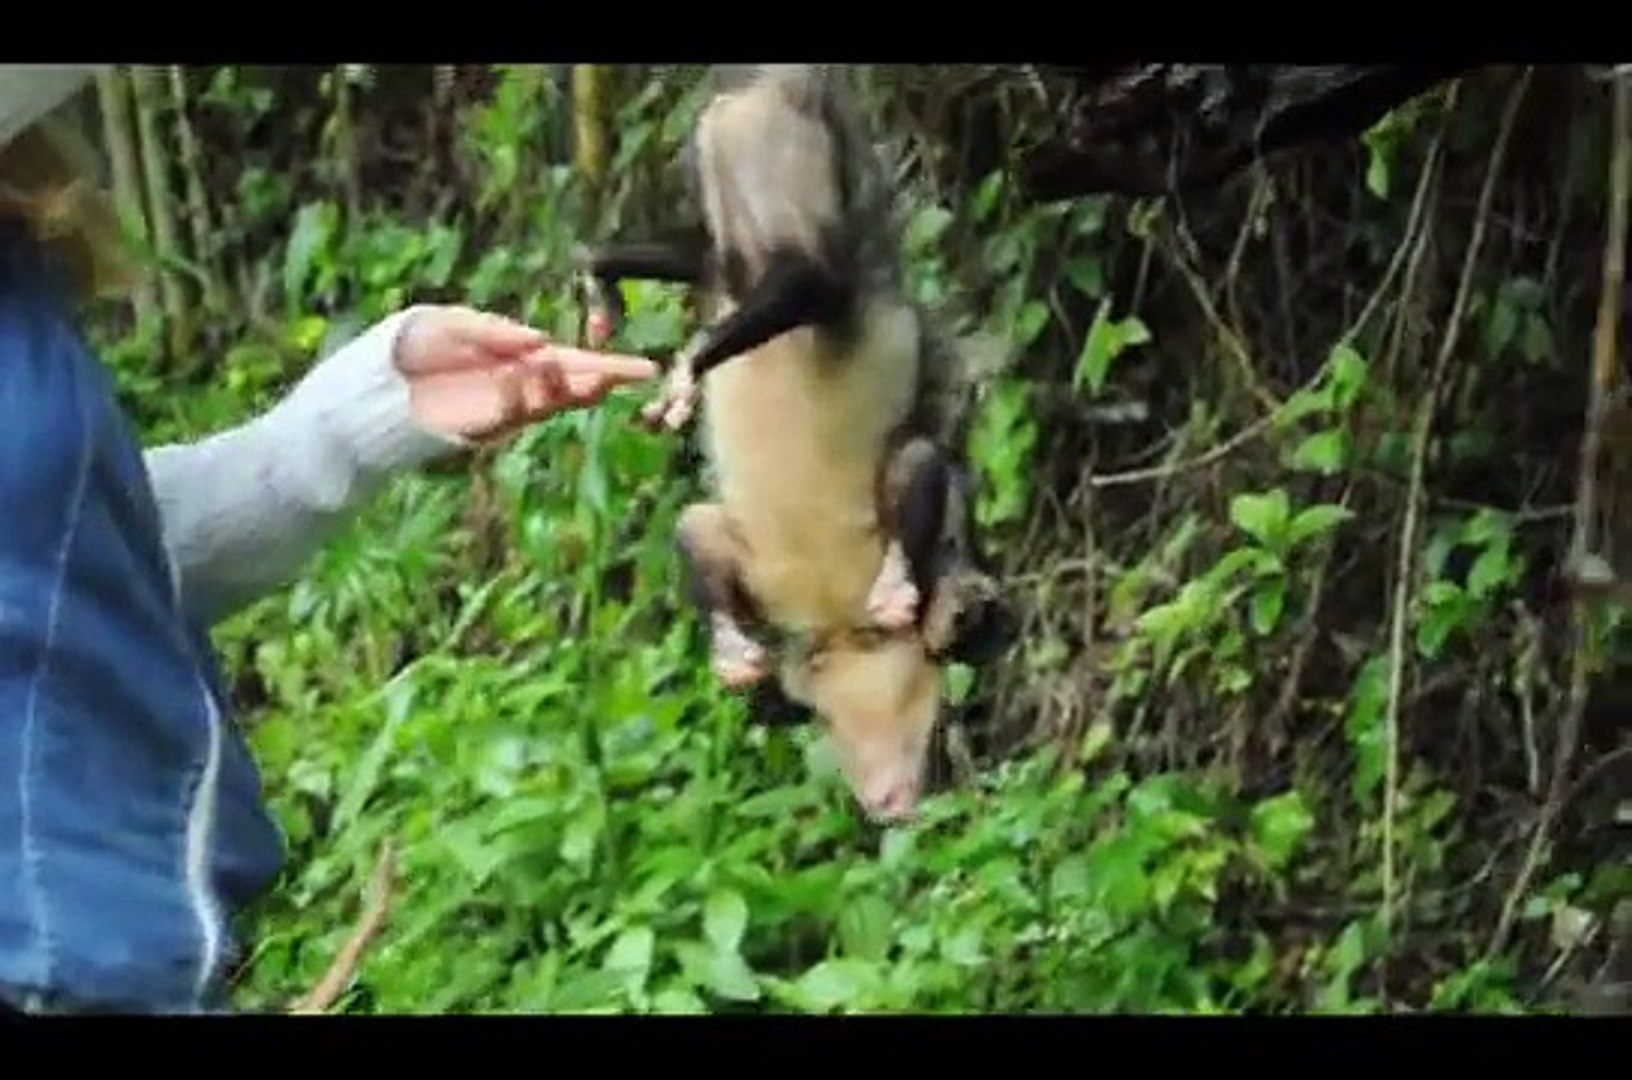 Liberación de rabipelado y su bebé / opossum liberation, Didelphis marsupialis